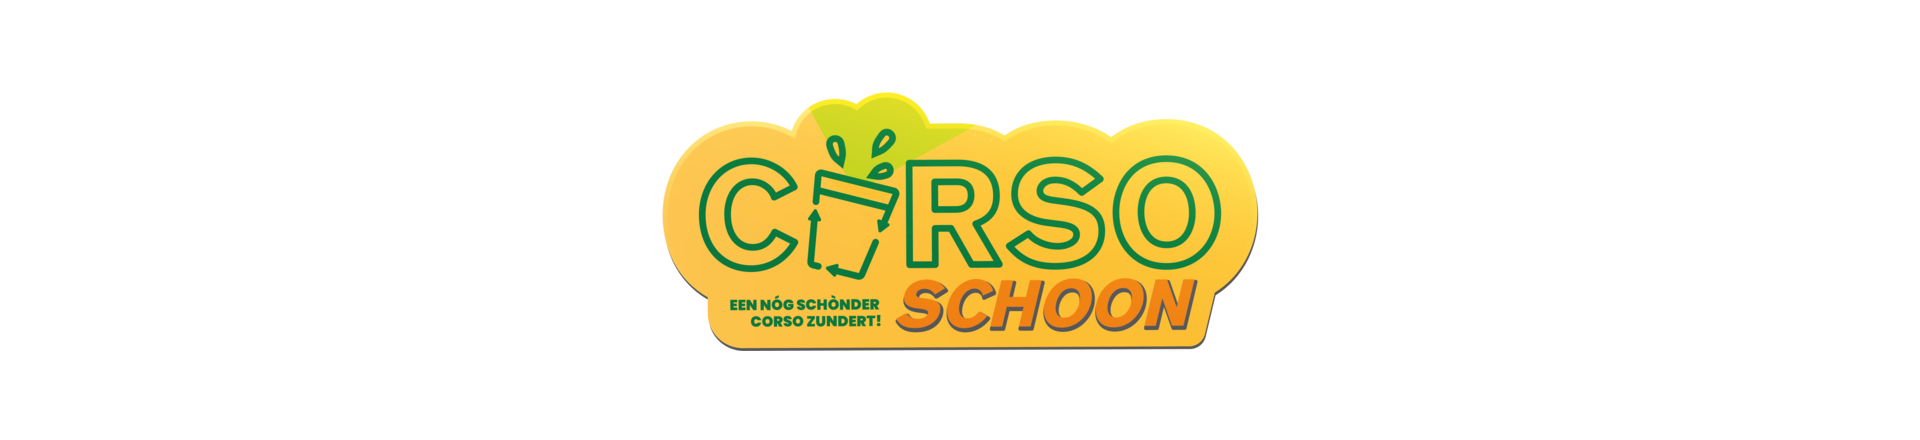 Logo_Corso_Schoon_web_news-62ee021147d30